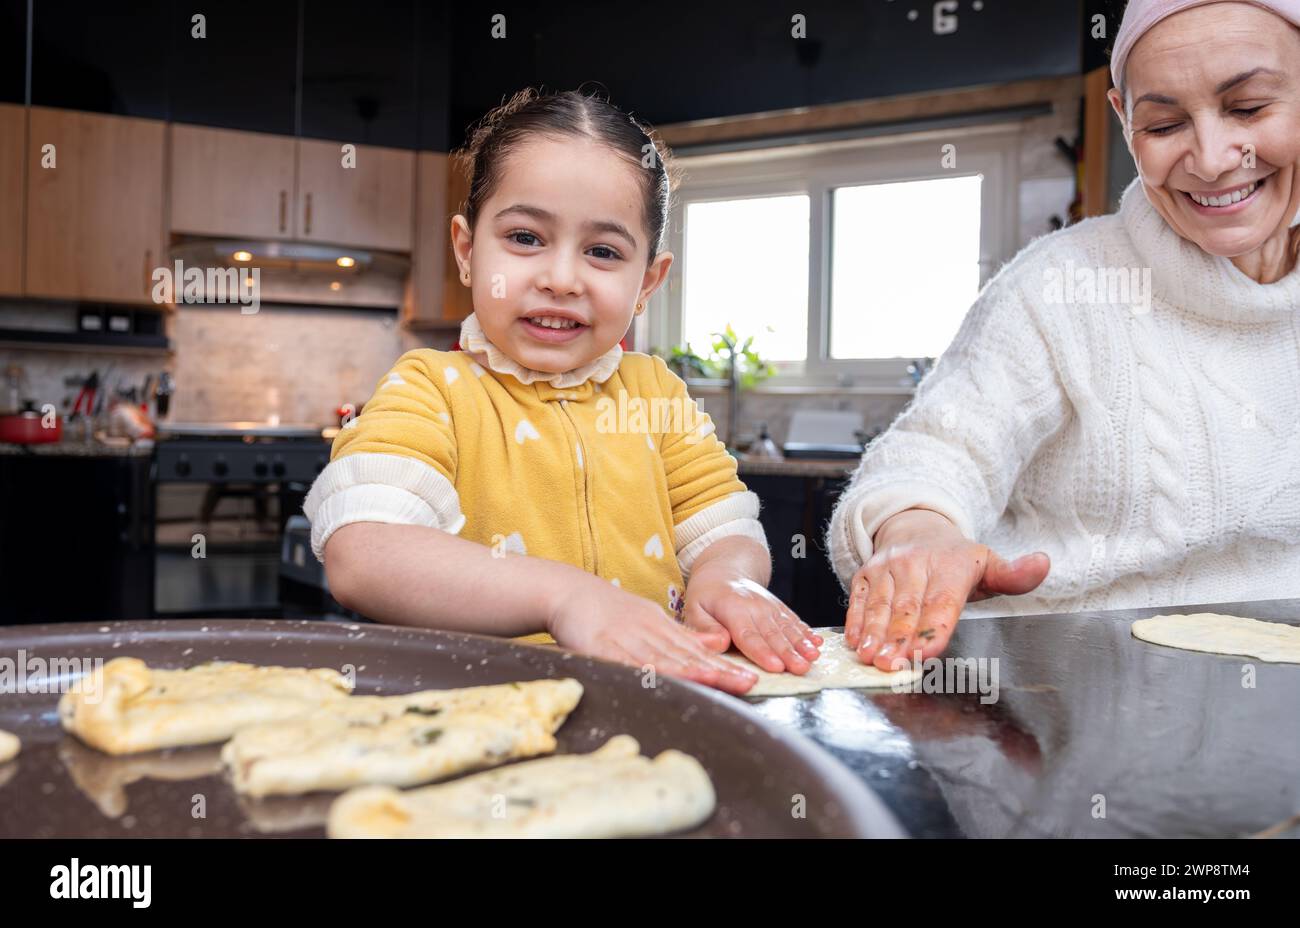 Un'emozionante scena in cui la nonna e il bambino si legano in cucina, tramandando la tradizione culinaria e l'amore attraverso prelibatezze fatte in casa Foto Stock